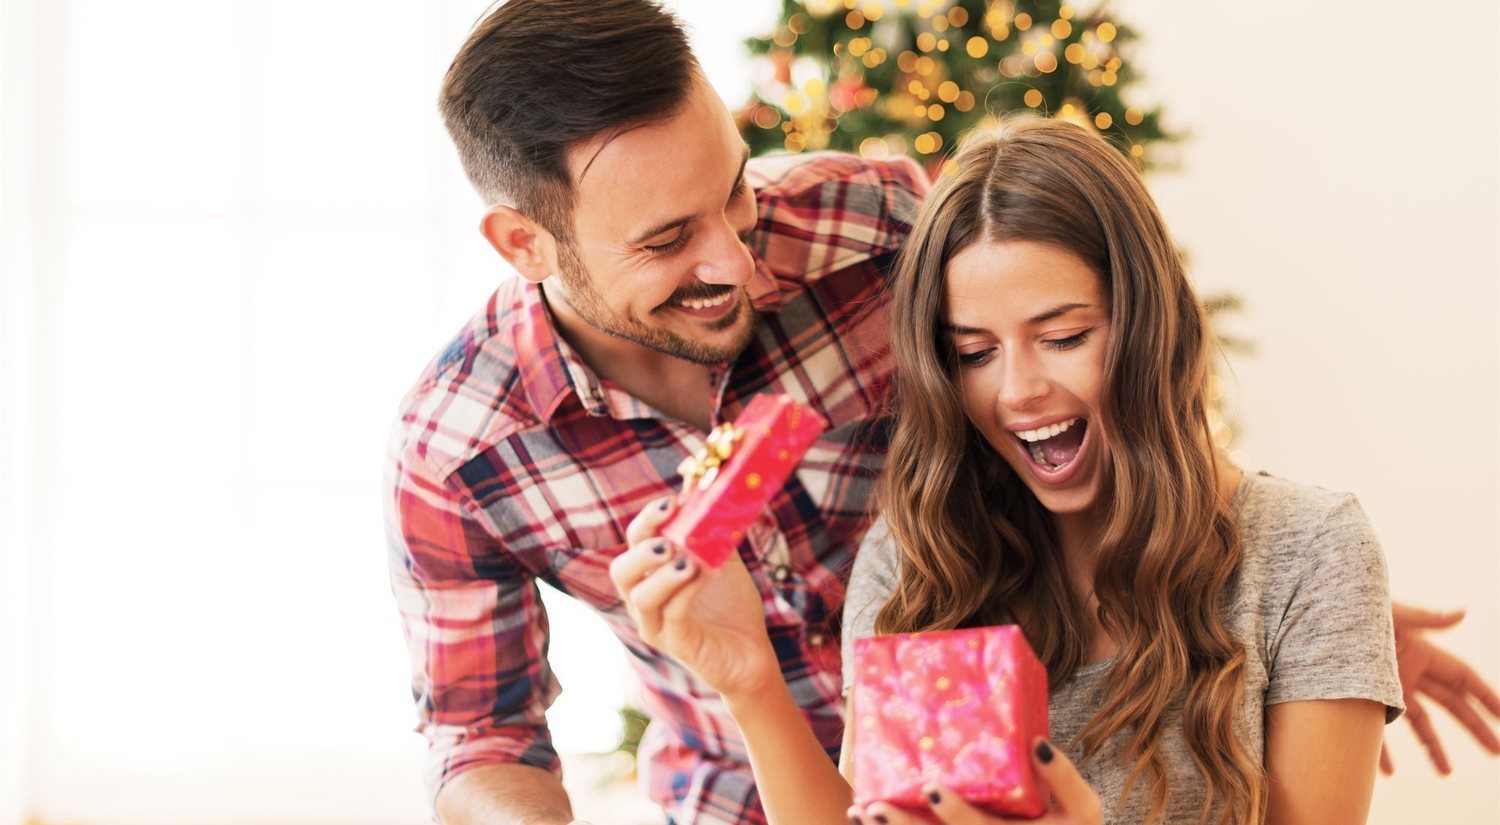 Los mejores regalos de Navidad y Reyes para mujer